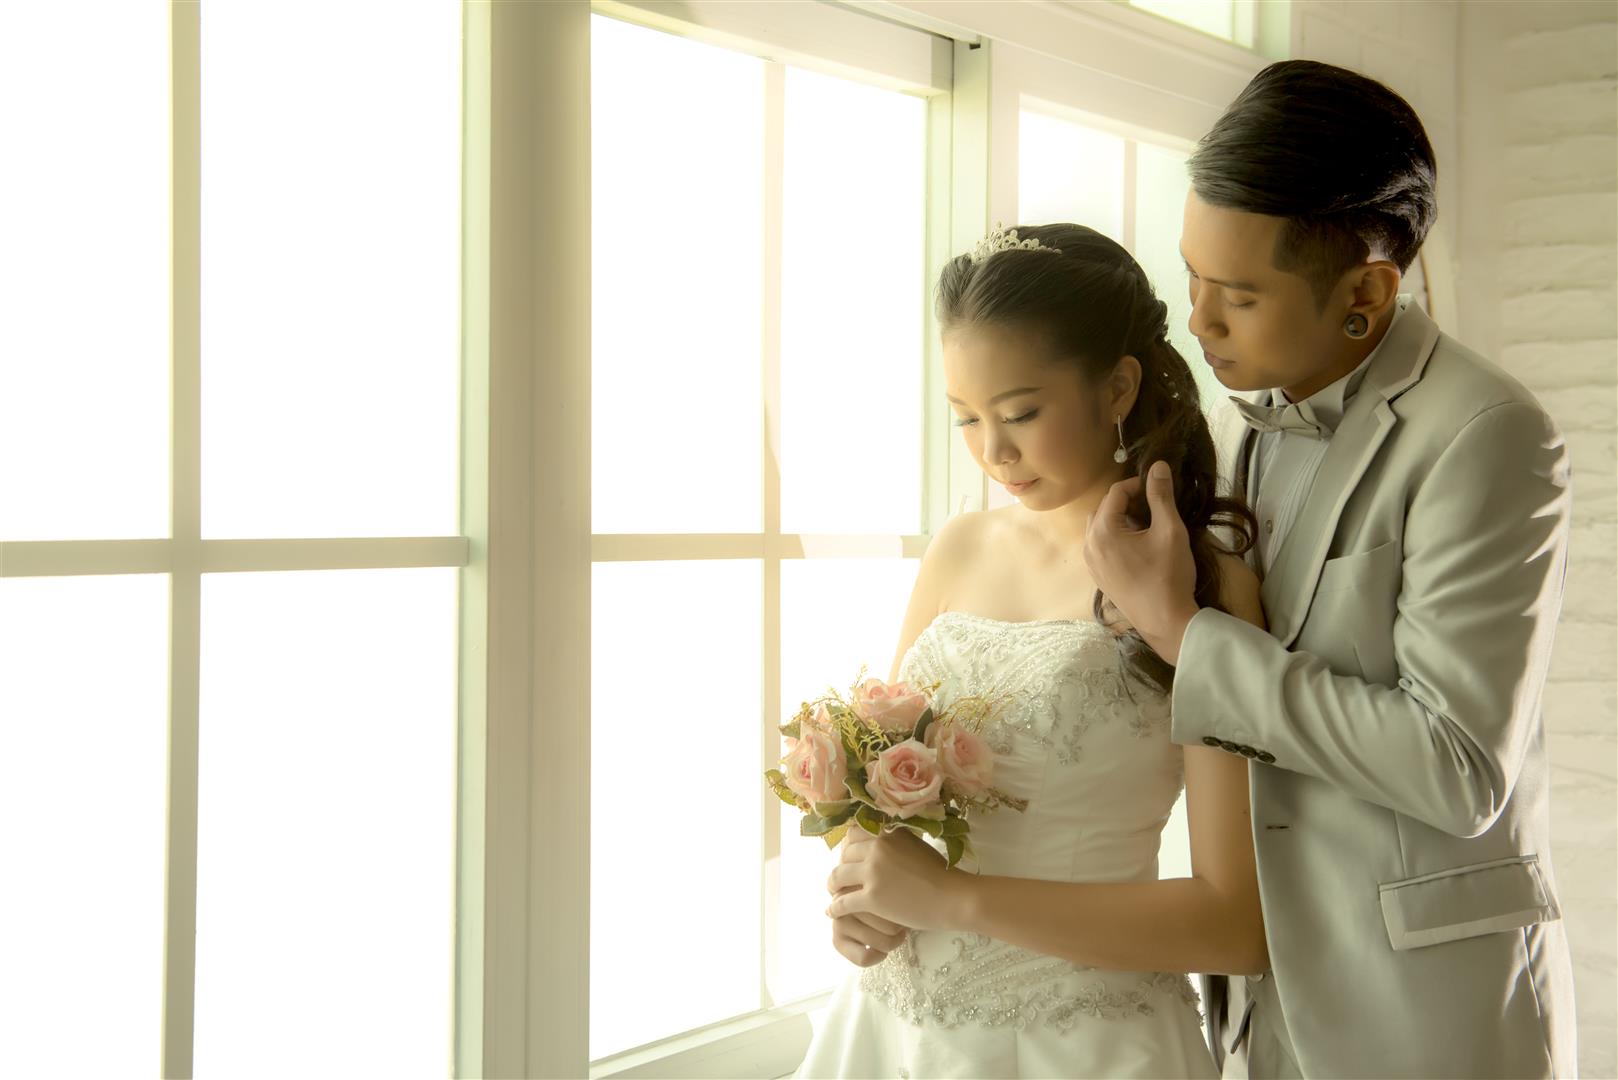 ถ่ายรูปแต่งงาน ชุดไทย ชุดเจ้าสาว เช่าชุดแต่งงาน ถ่ายรูปแต่งงานราคาถูก ถ่ายภาพ แต่งงาน ถ่ายรูป แต่งงาน ร้านถ่ายรูปแต่งงาน สตูดิโอ 